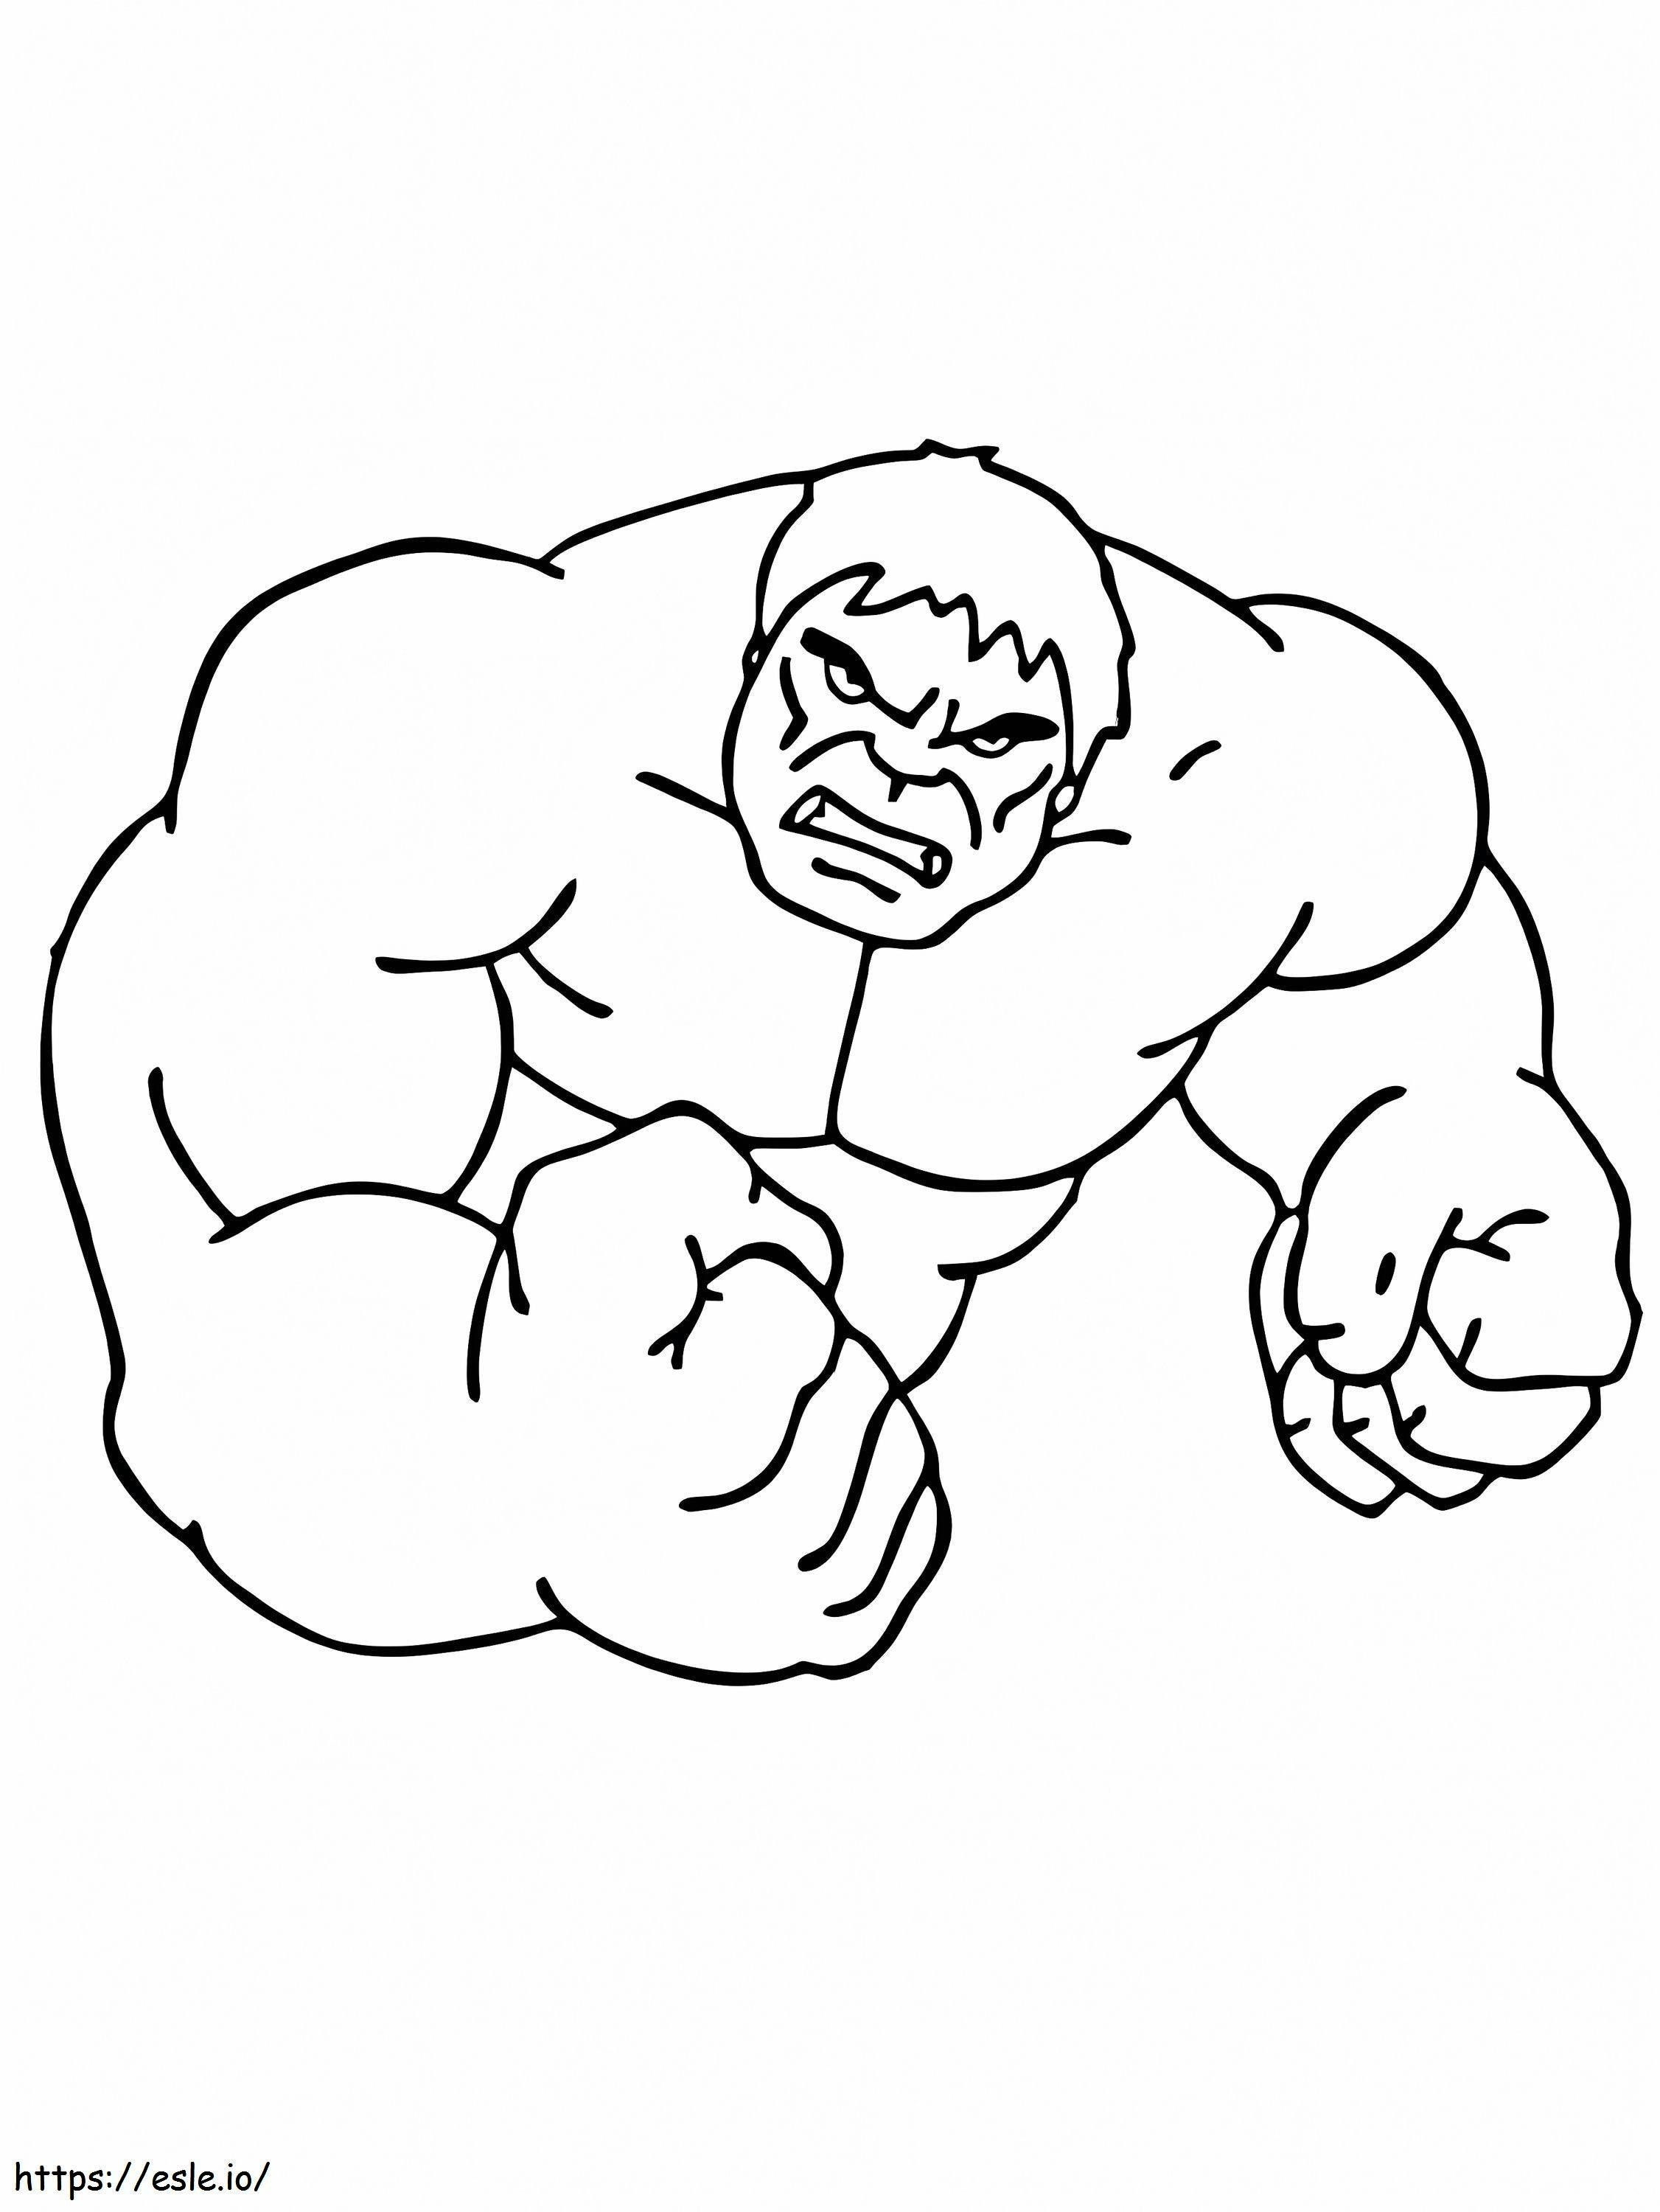 Coloriage Hulk Facile à imprimer dessin